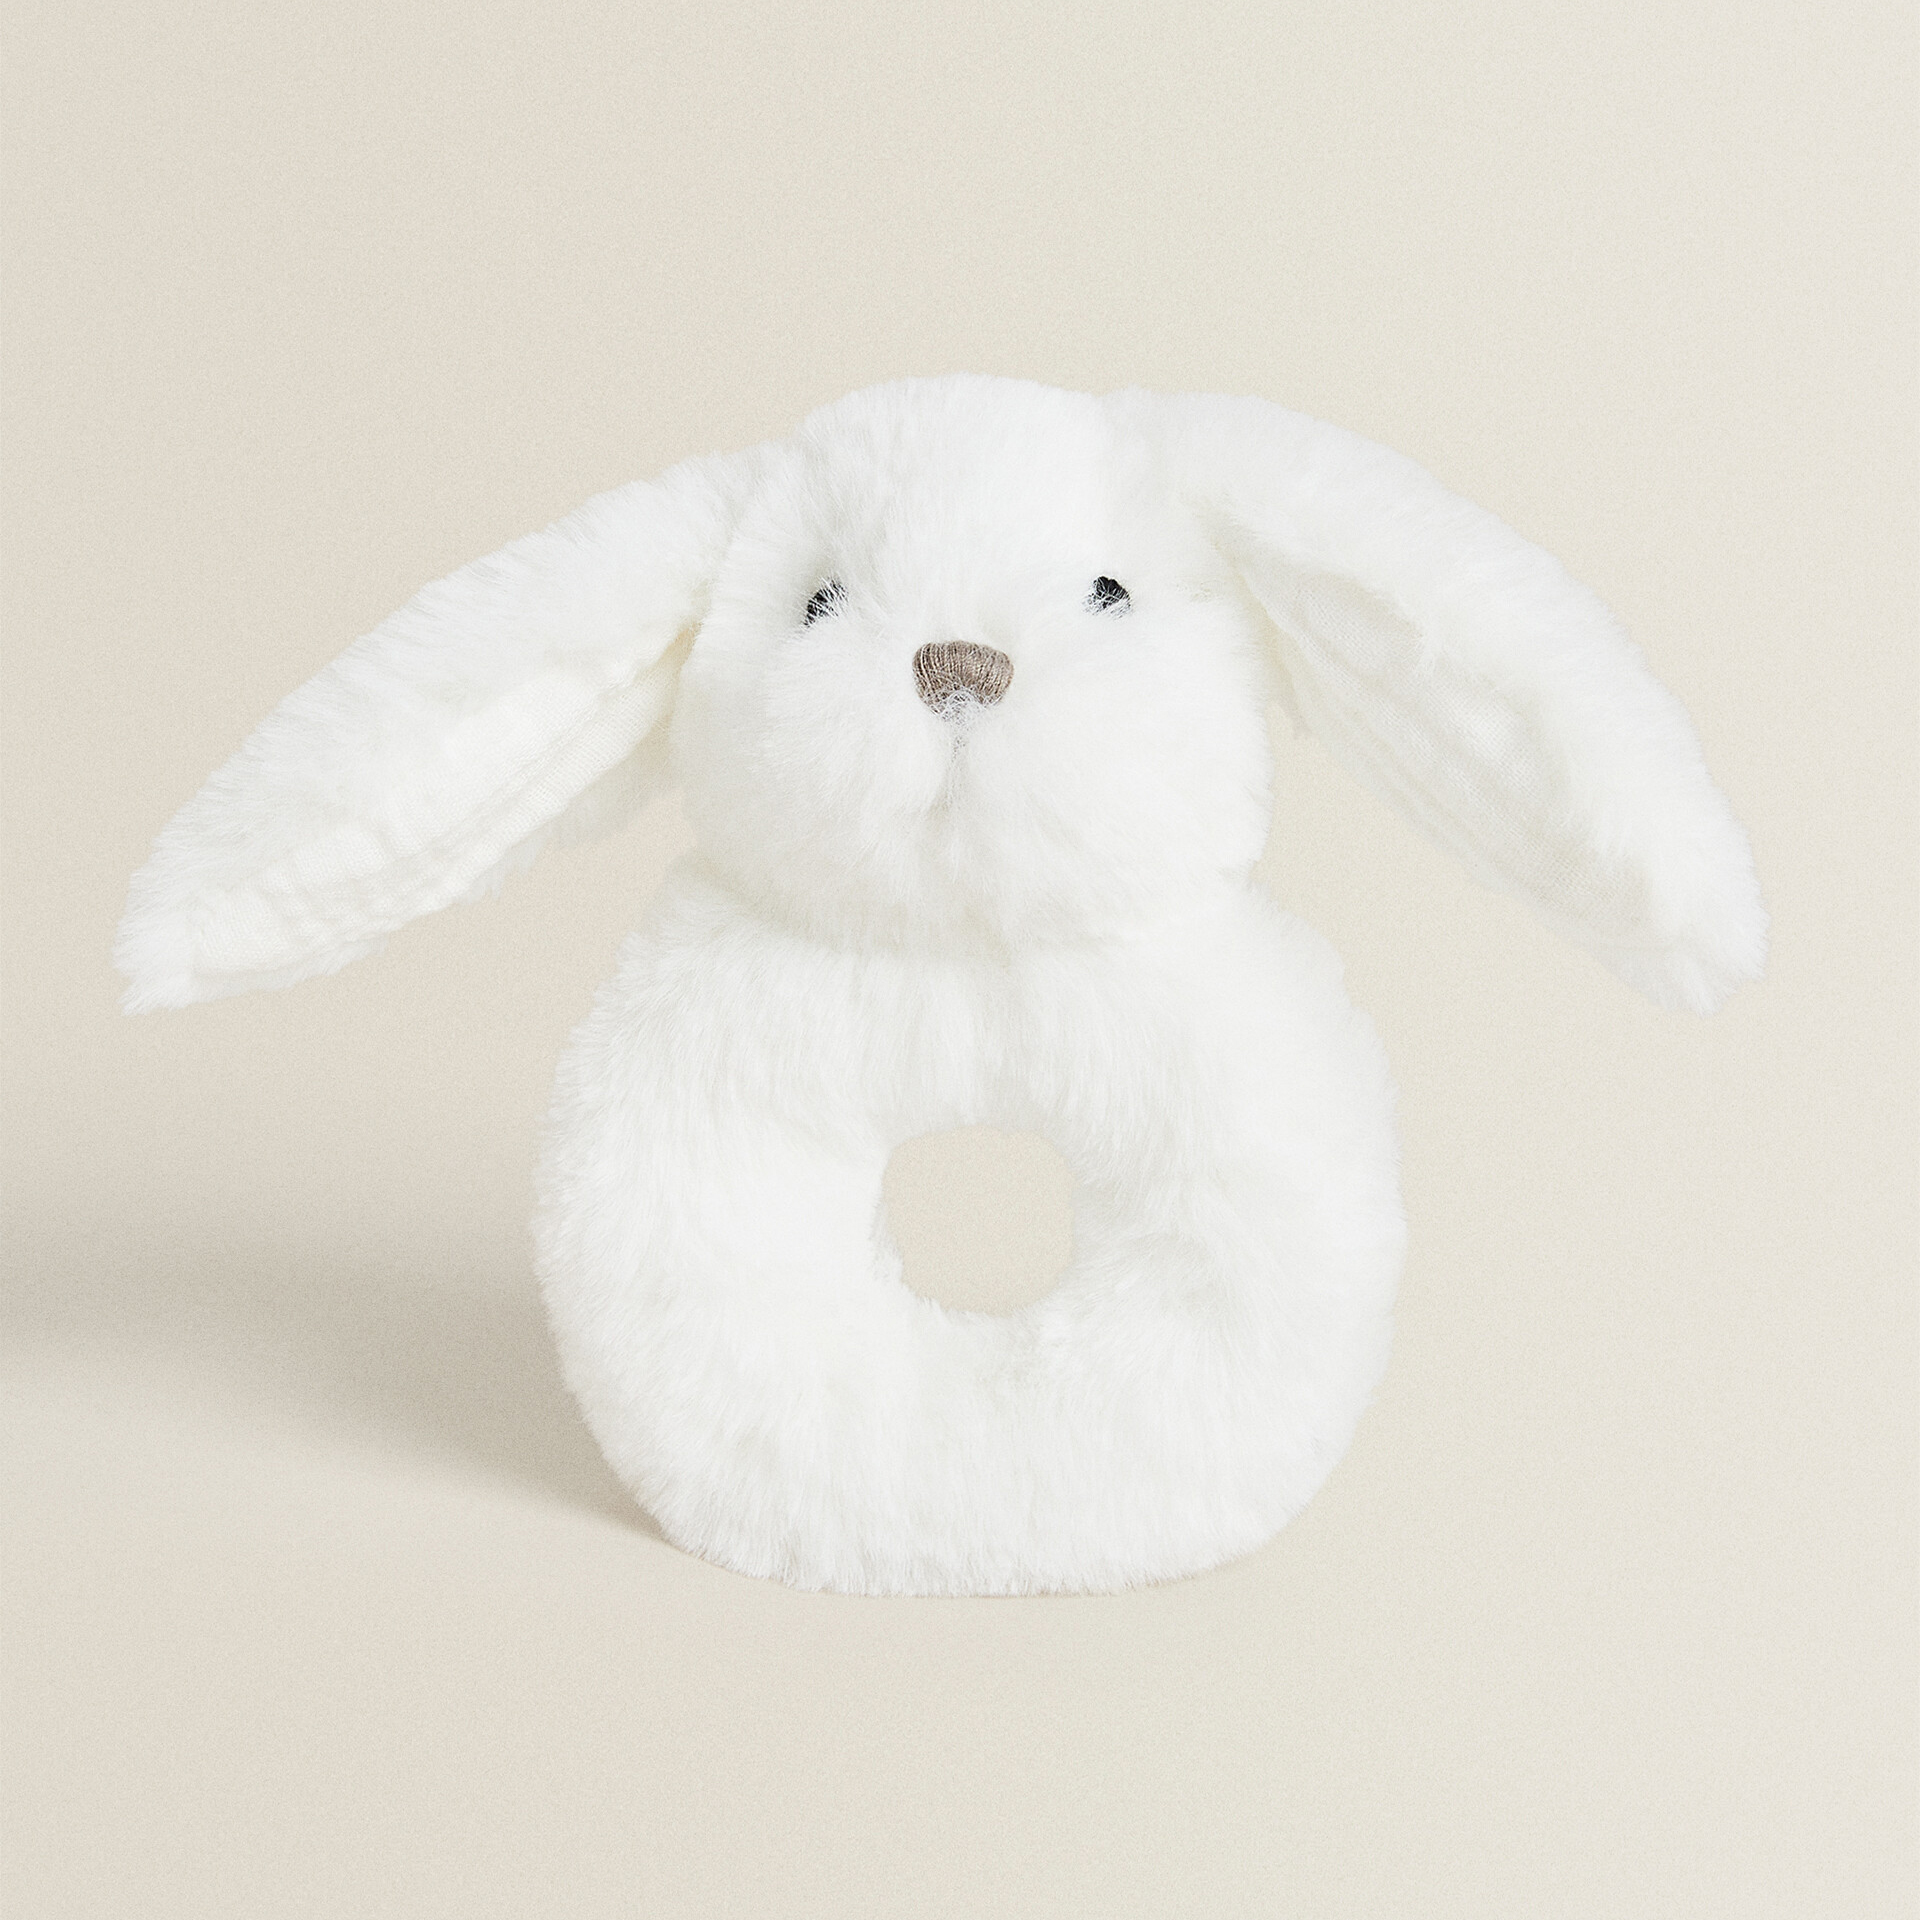 Мягкая игрушка-погремка кролик Zara Home, белый развивающая детская игрушка погремушка с шариками детская игрушка погремушка для кроватки детская игрушка погремушка монтессори детска